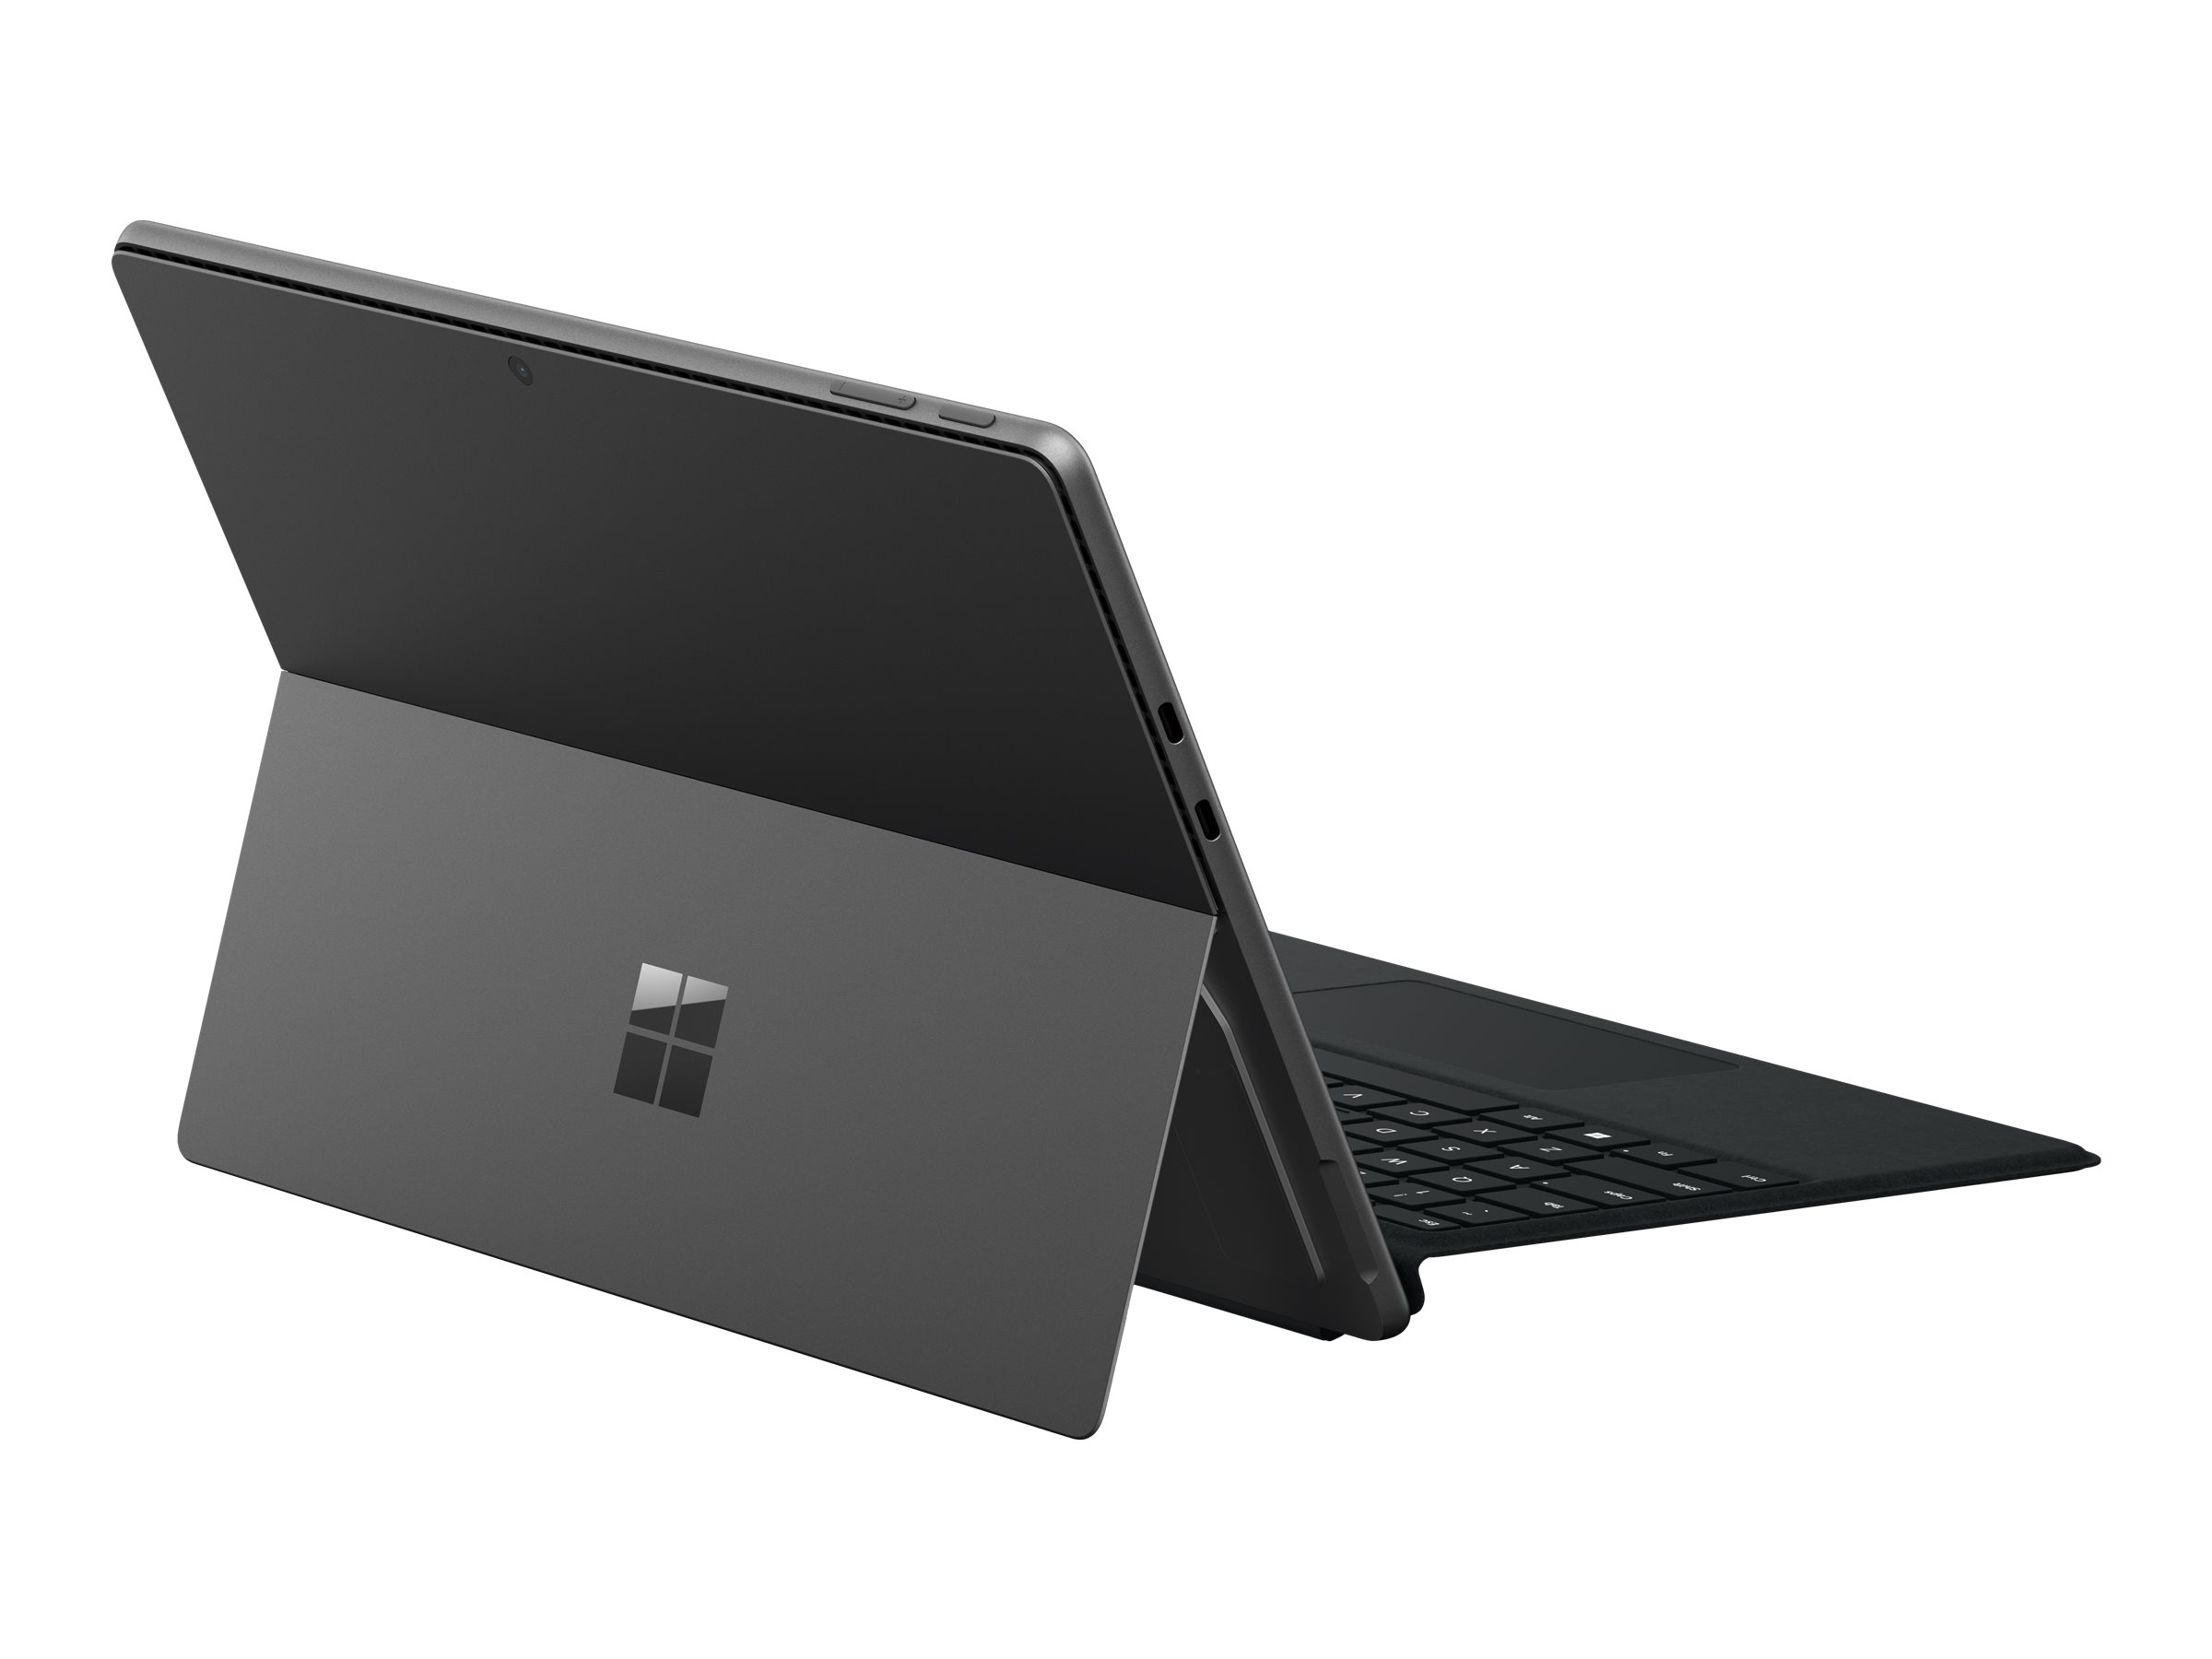 Microsoft Surface Pro 9 for Business - Tablette - Intel Core i5 - 1245U / jusqu'à 4.4 GHz - Evo - Win 10 Pro - Carte graphique Intel Iris Xe - 8 Go RAM - 256 Go SSD - 13" écran tactile 2880 x 1920 @ 120 Hz - Wi-Fi 6E - graphite - S1W-00023 - Ordinateurs portables